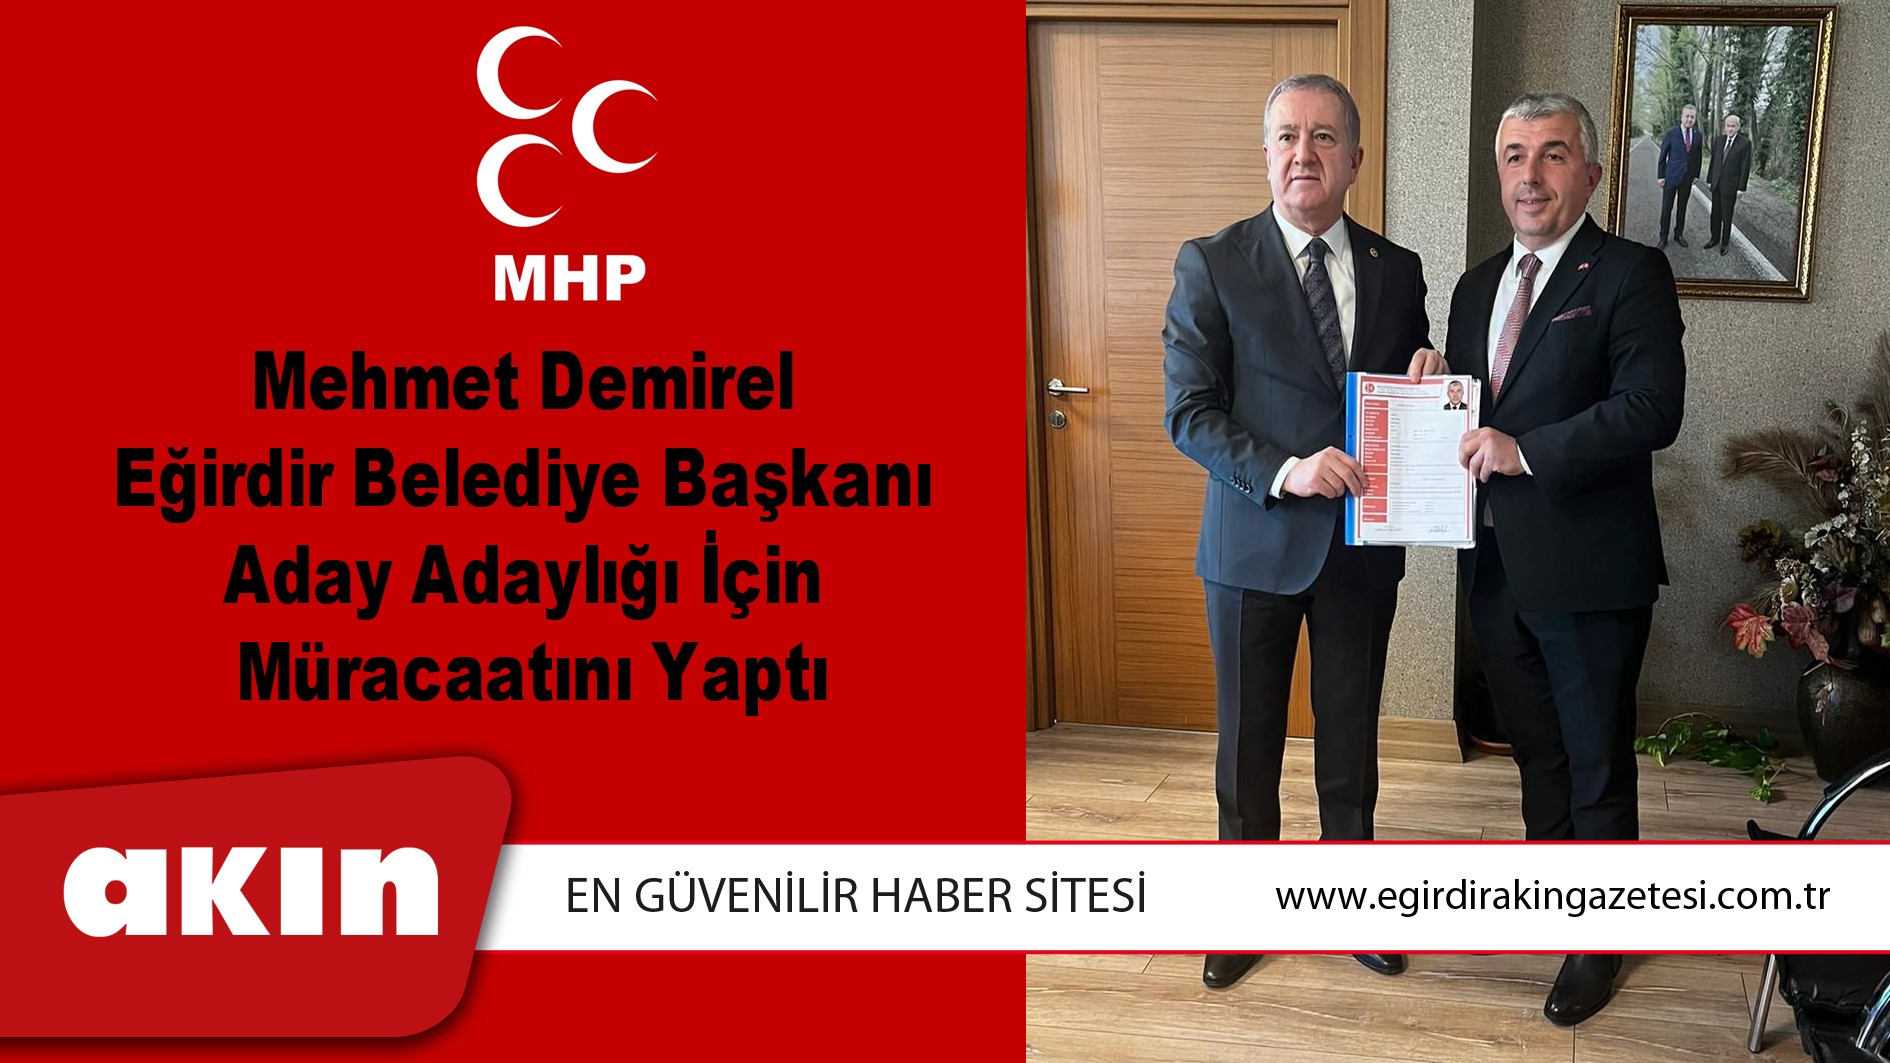 Mehmet Demirel Eğirdir Belediye Başkanı  Aday Adaylığı İçin  Müracaatını Yaptı